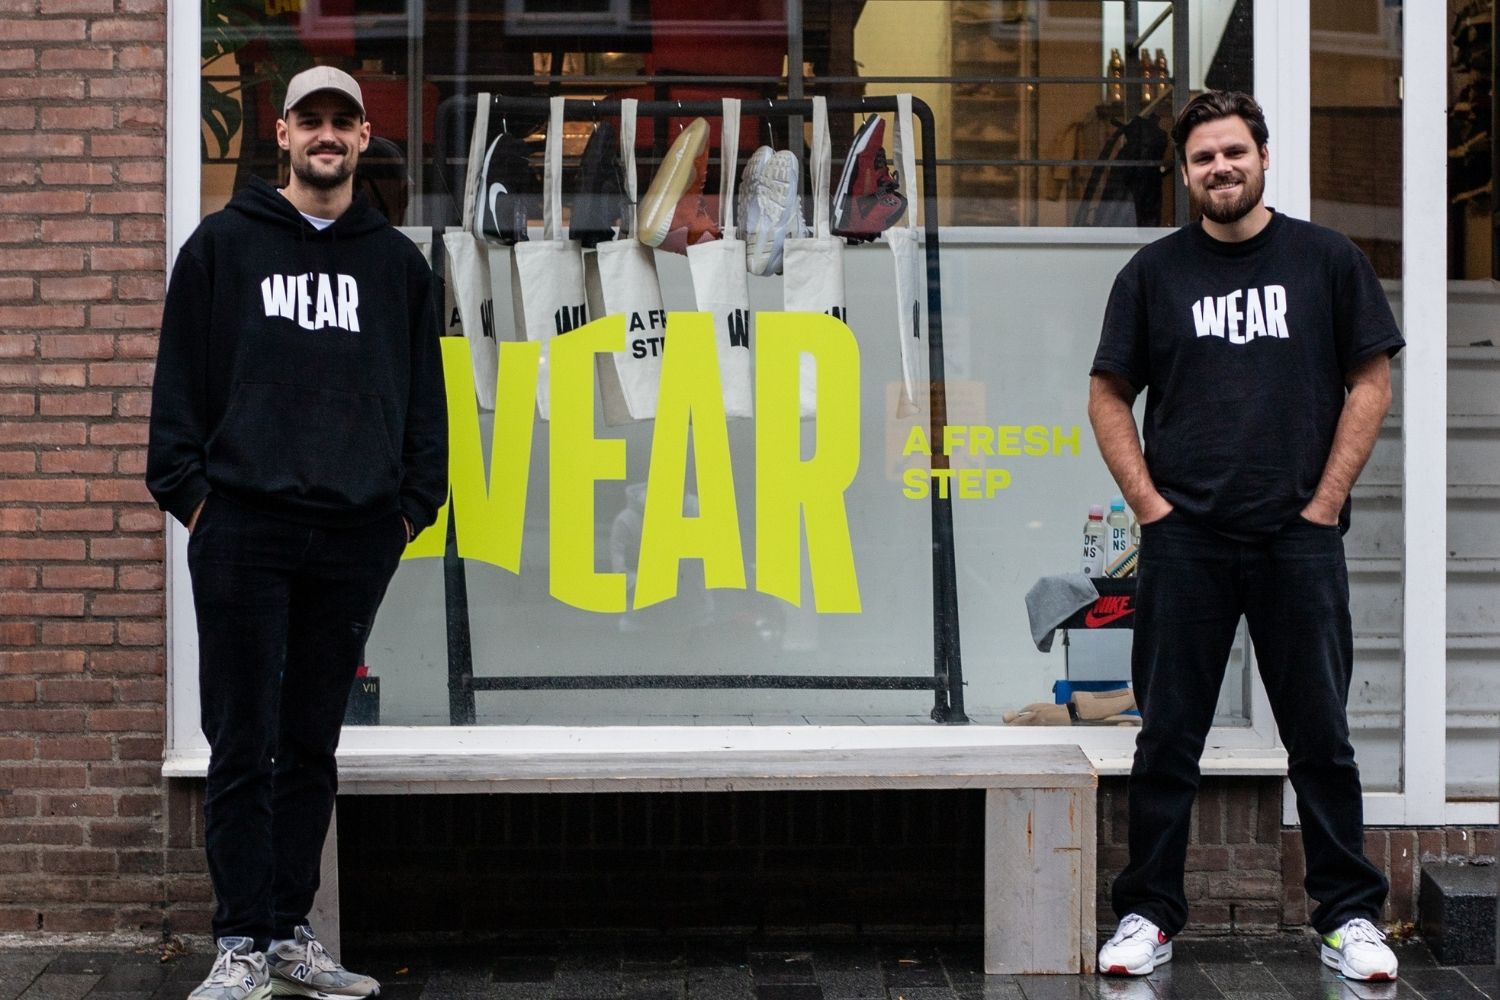 Op weg naar duurzaamheid met WEAR – Interview Pim en Lorenzo